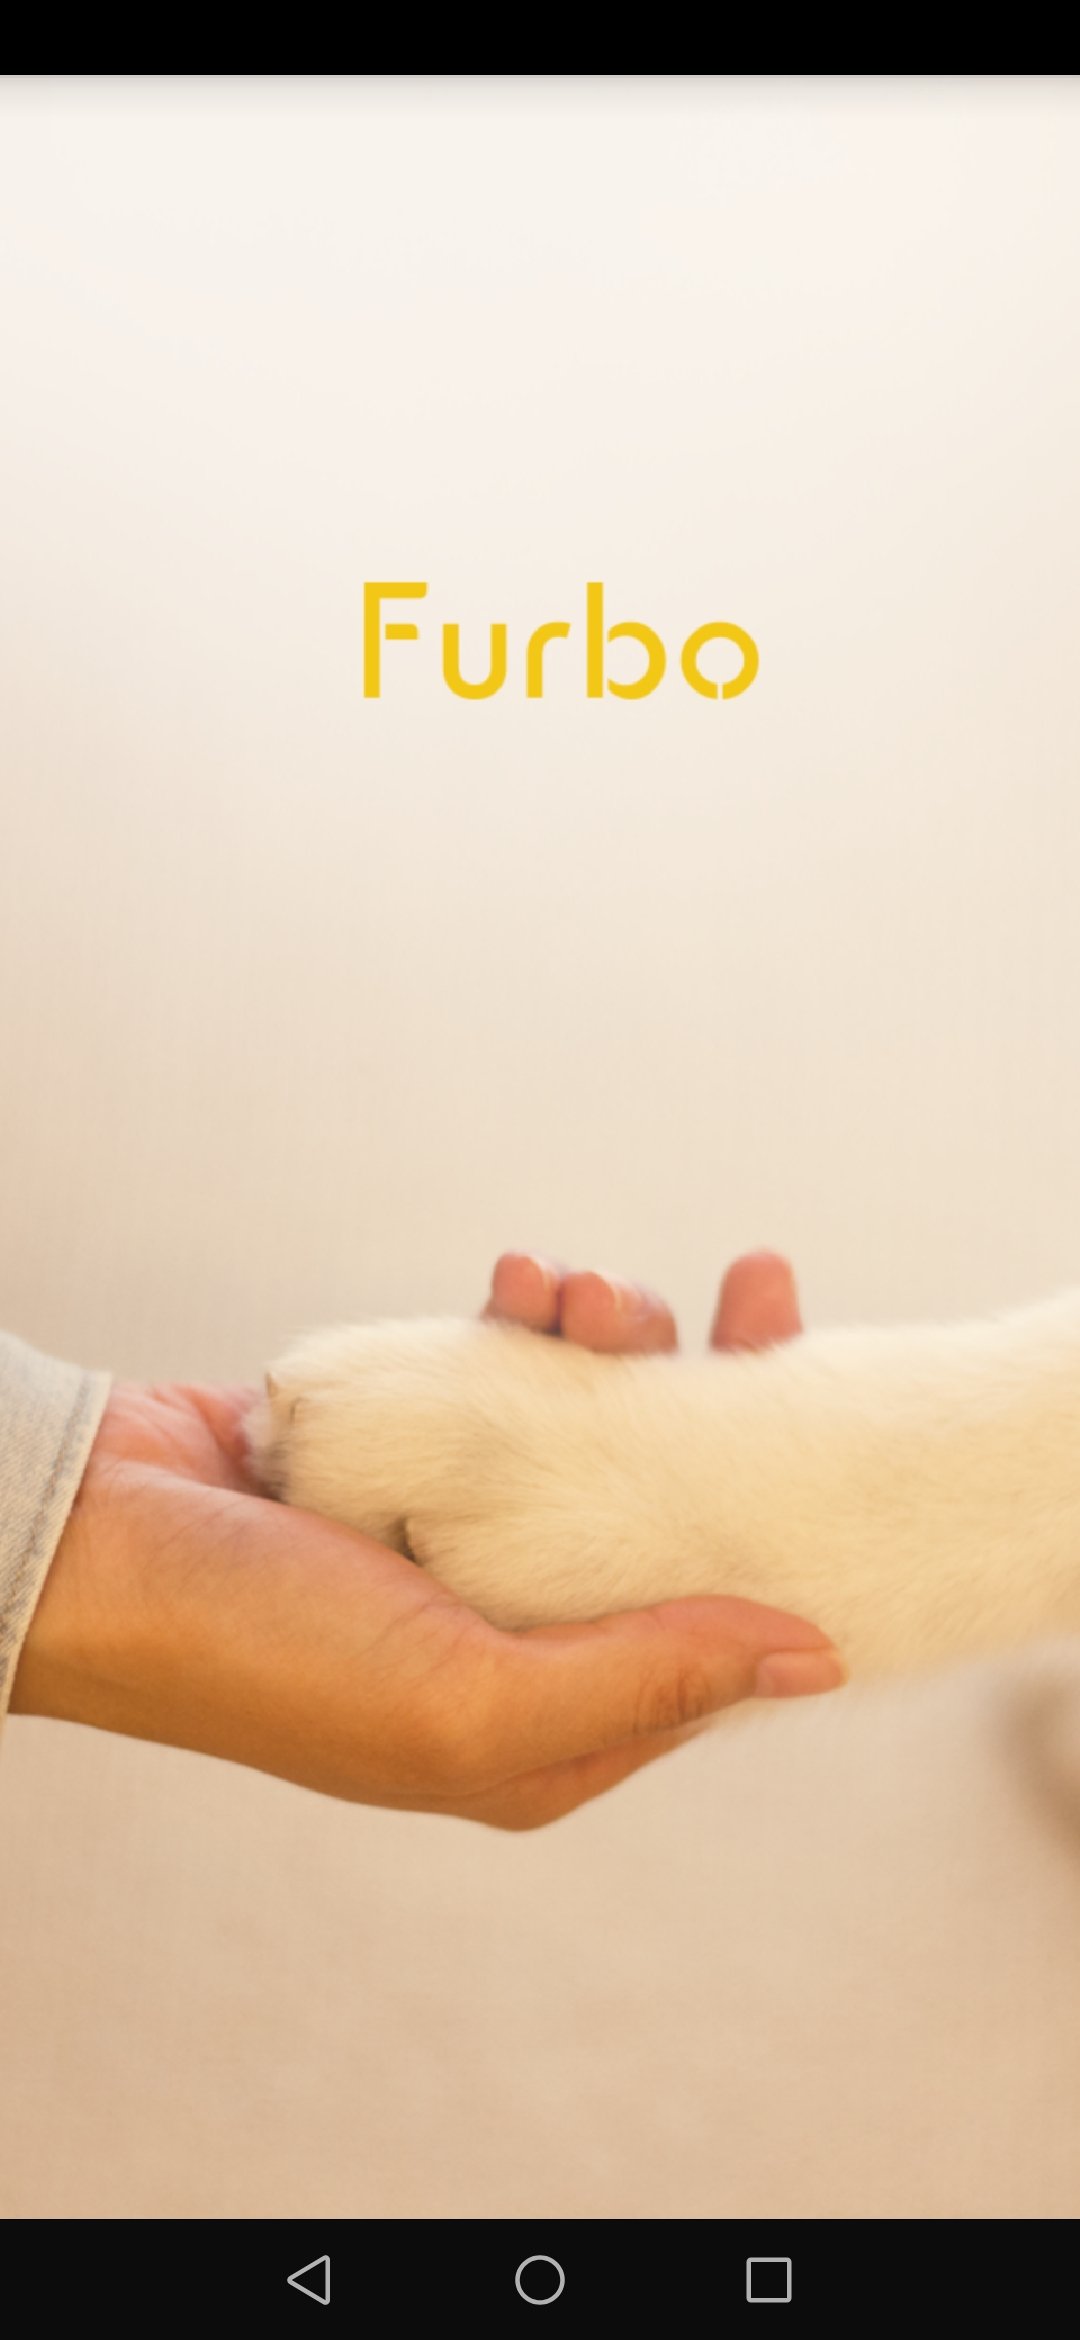 Hundekamera Furbo getestet Hundeblog Canistecture